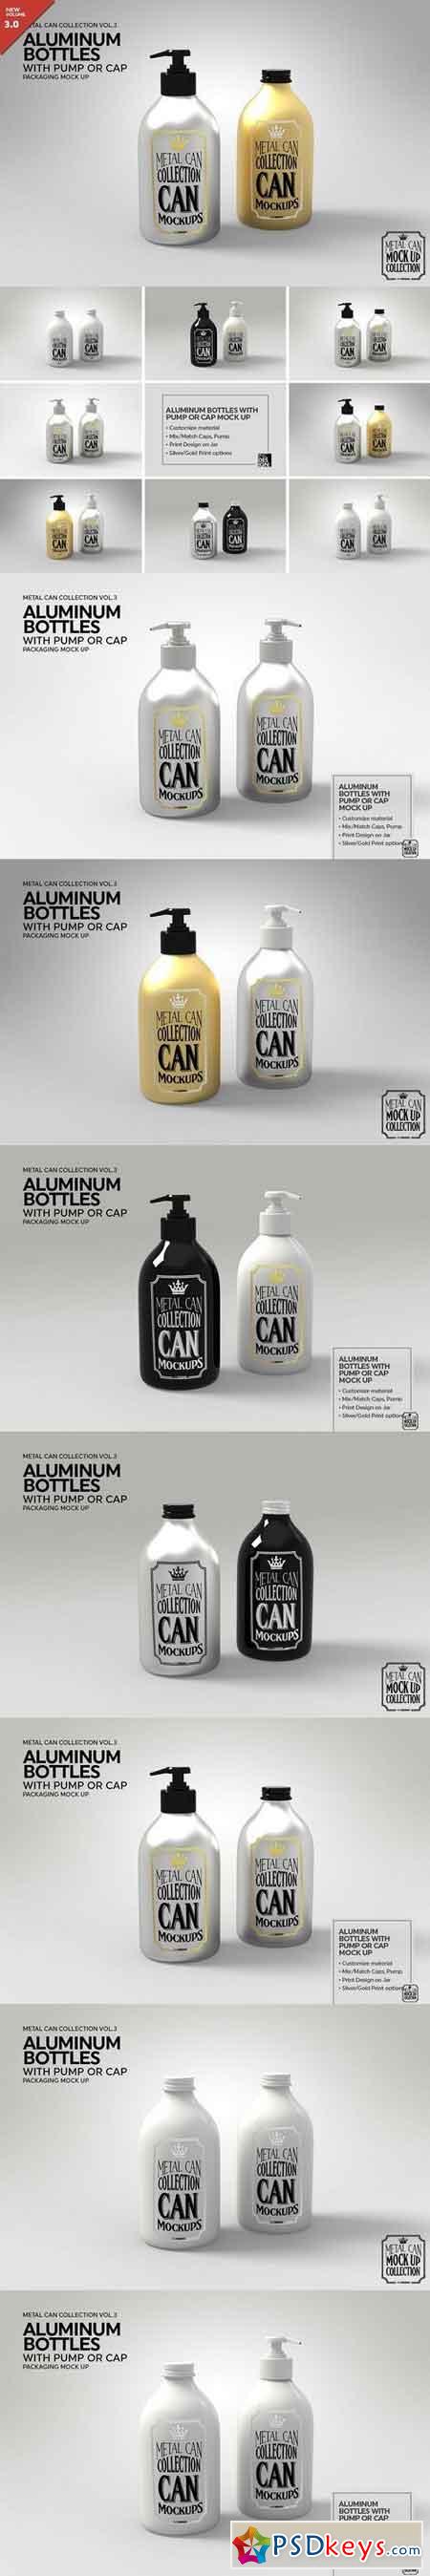 Aluminum Bottles Pump Cap MockUp 1928283